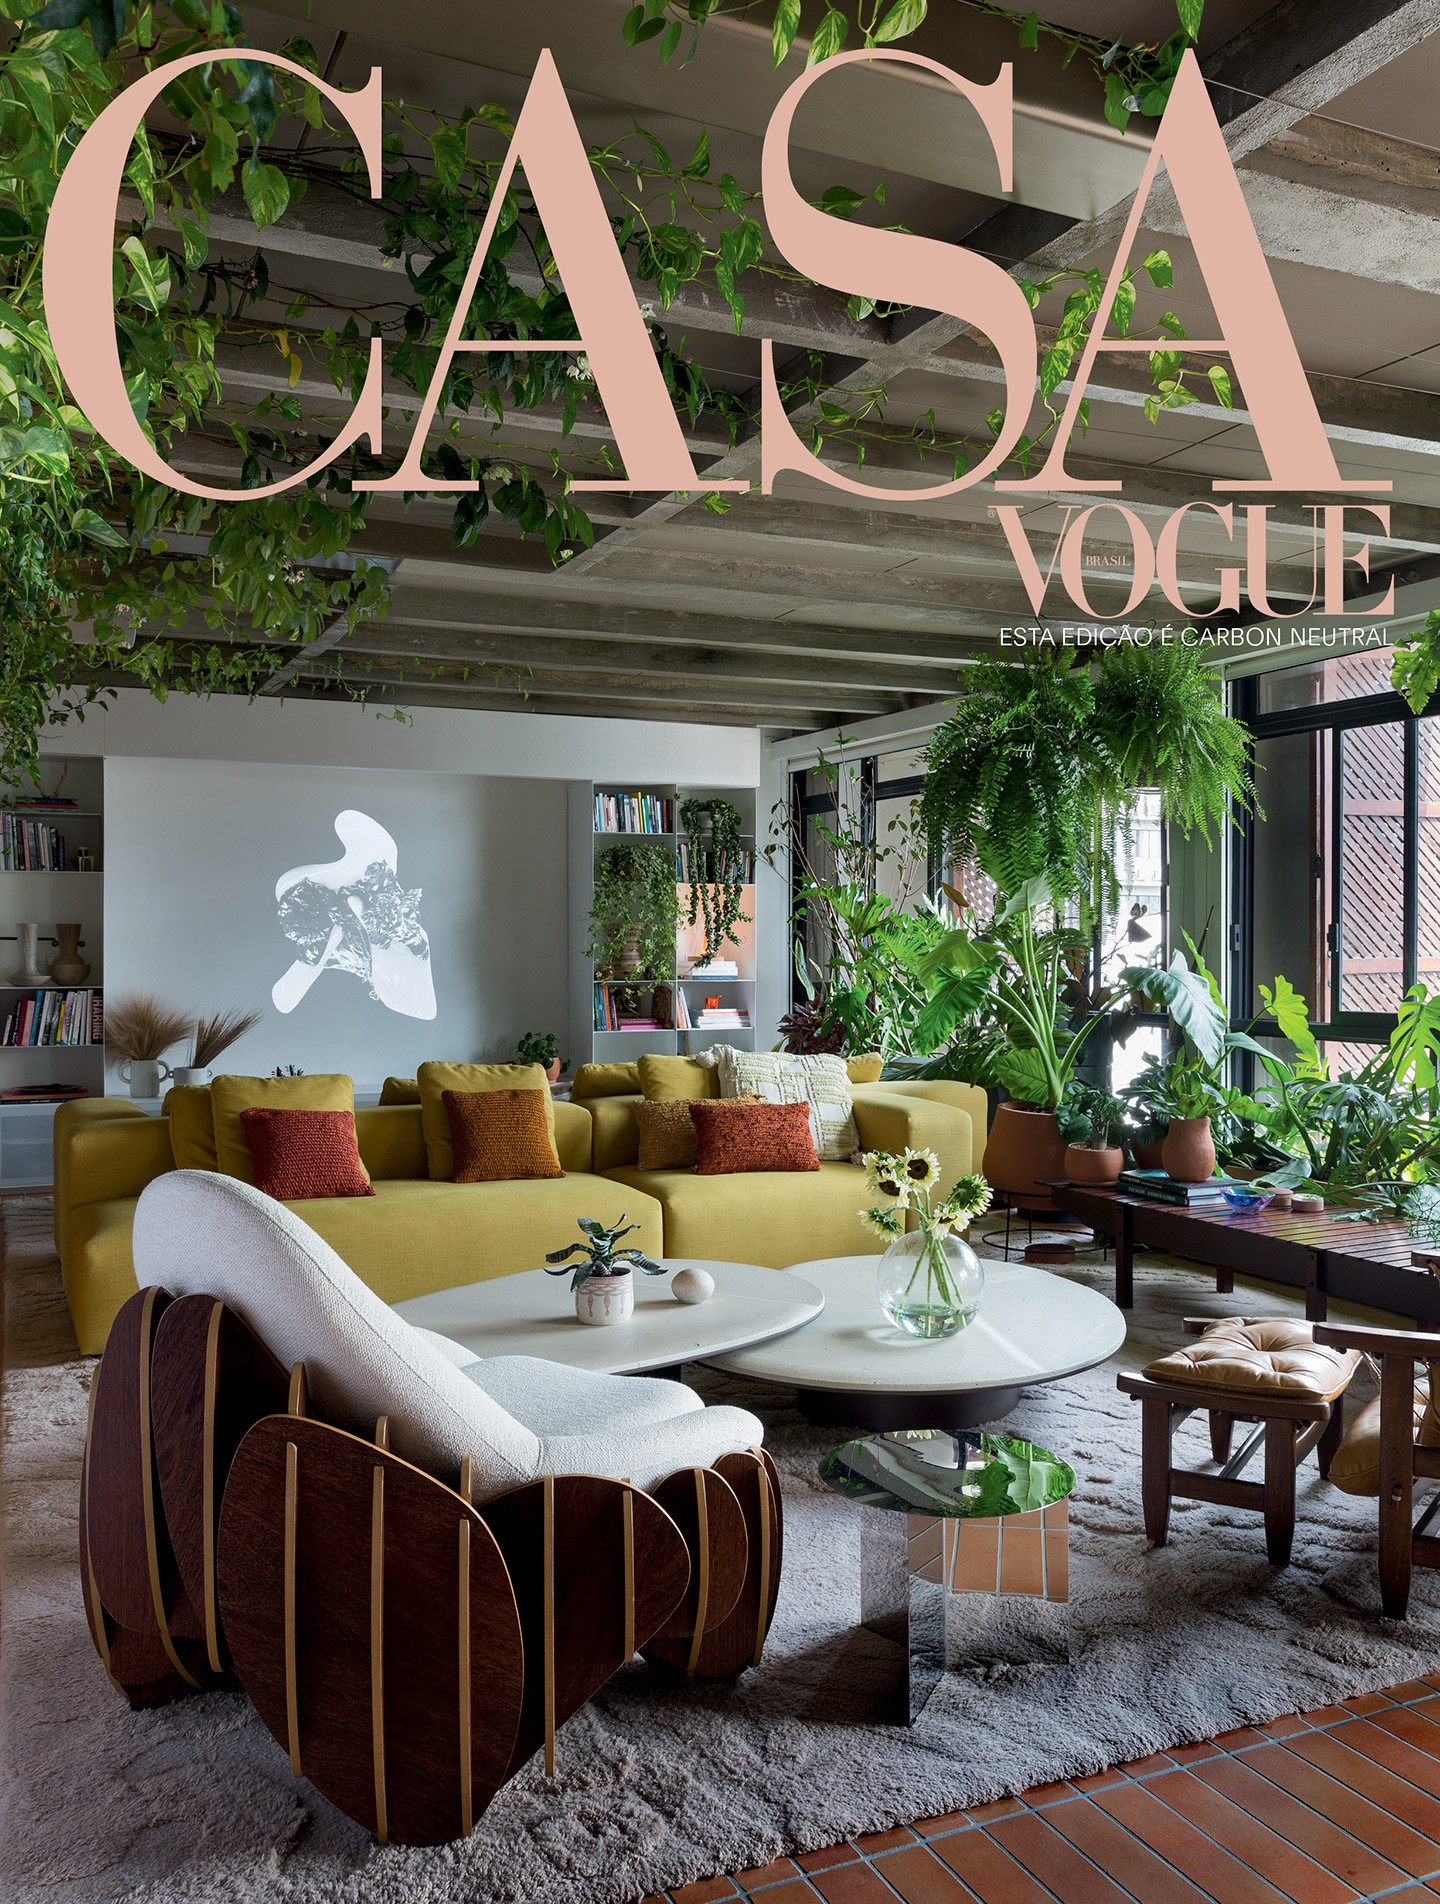 Design autoral é o tema da edição de julho da Casa Vogue (Foto: Filippo Bamberghi)